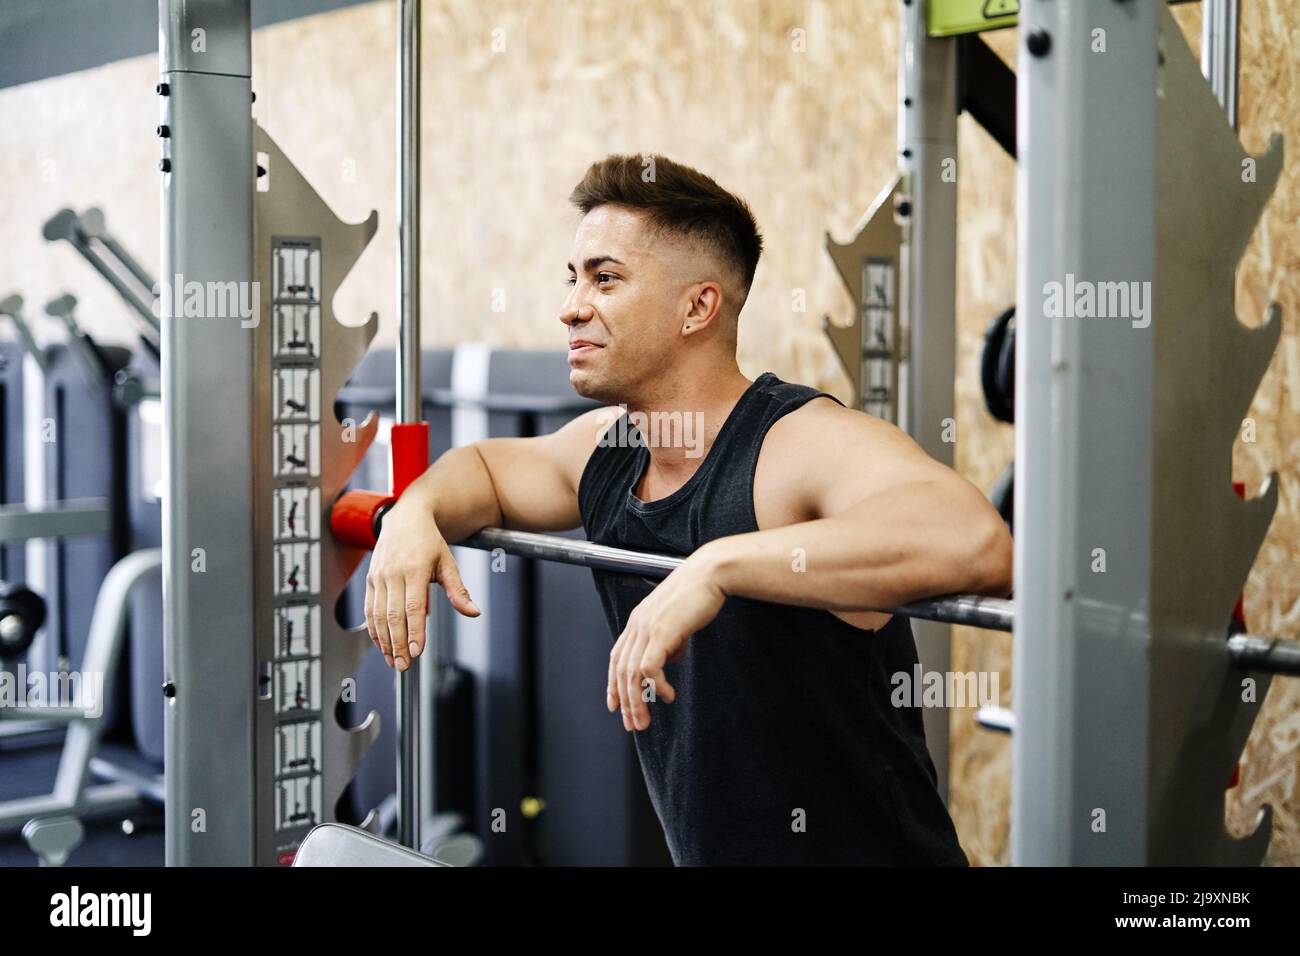 Jeune homme récupérant de soulever des poids dans Gritty entraînement Gym Banque D'Images